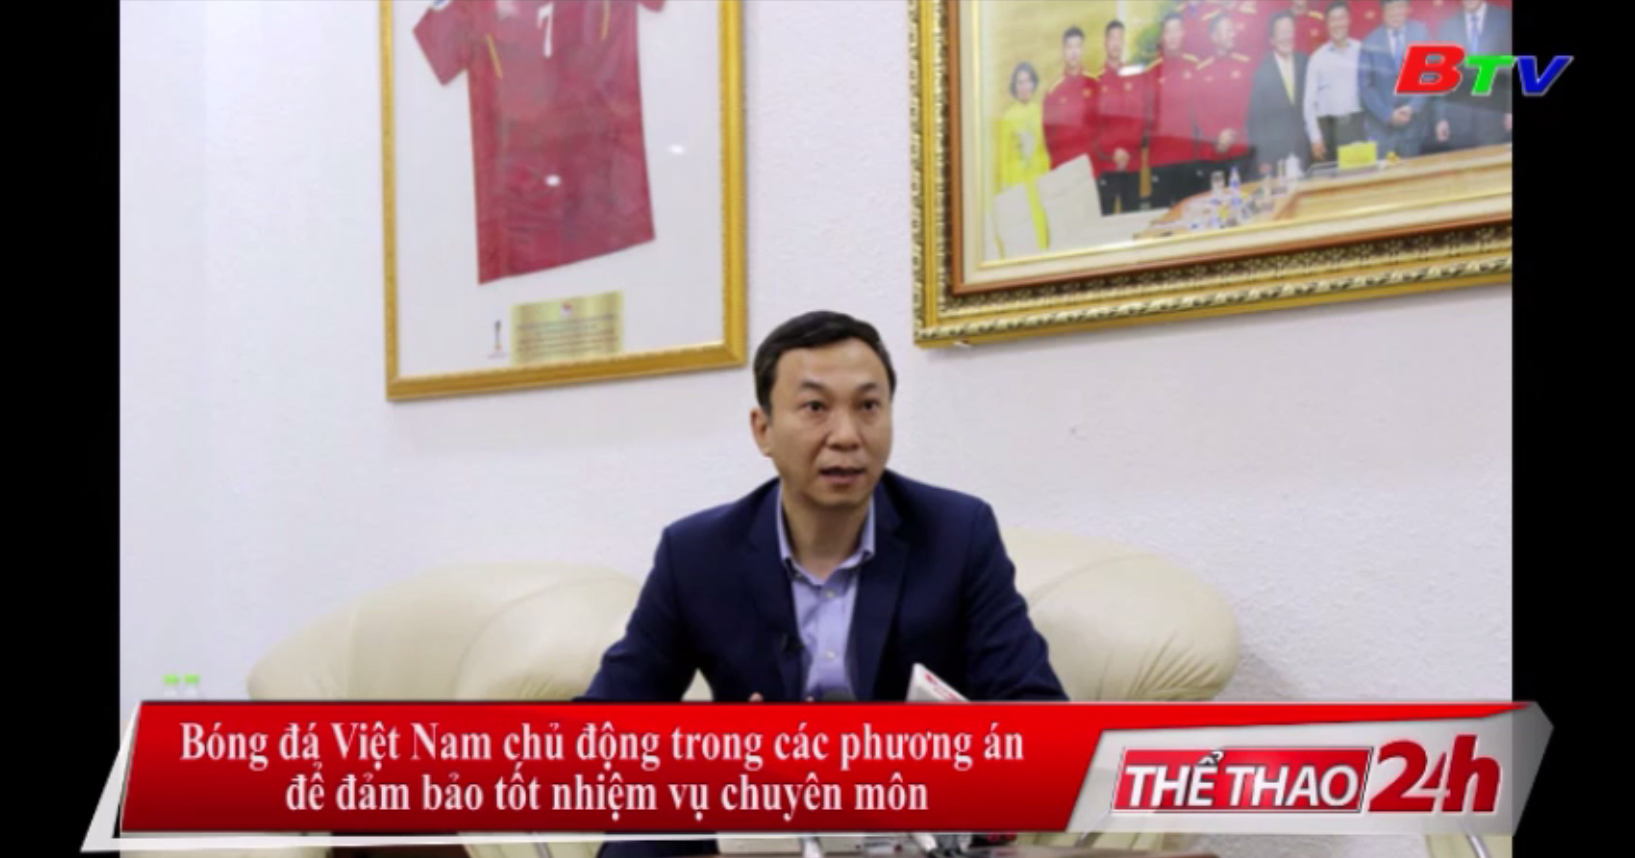 Bóng đá Việt Nam chủ động trong các phương án để đảm bảo tốt nhiệm vụ chuyên môn